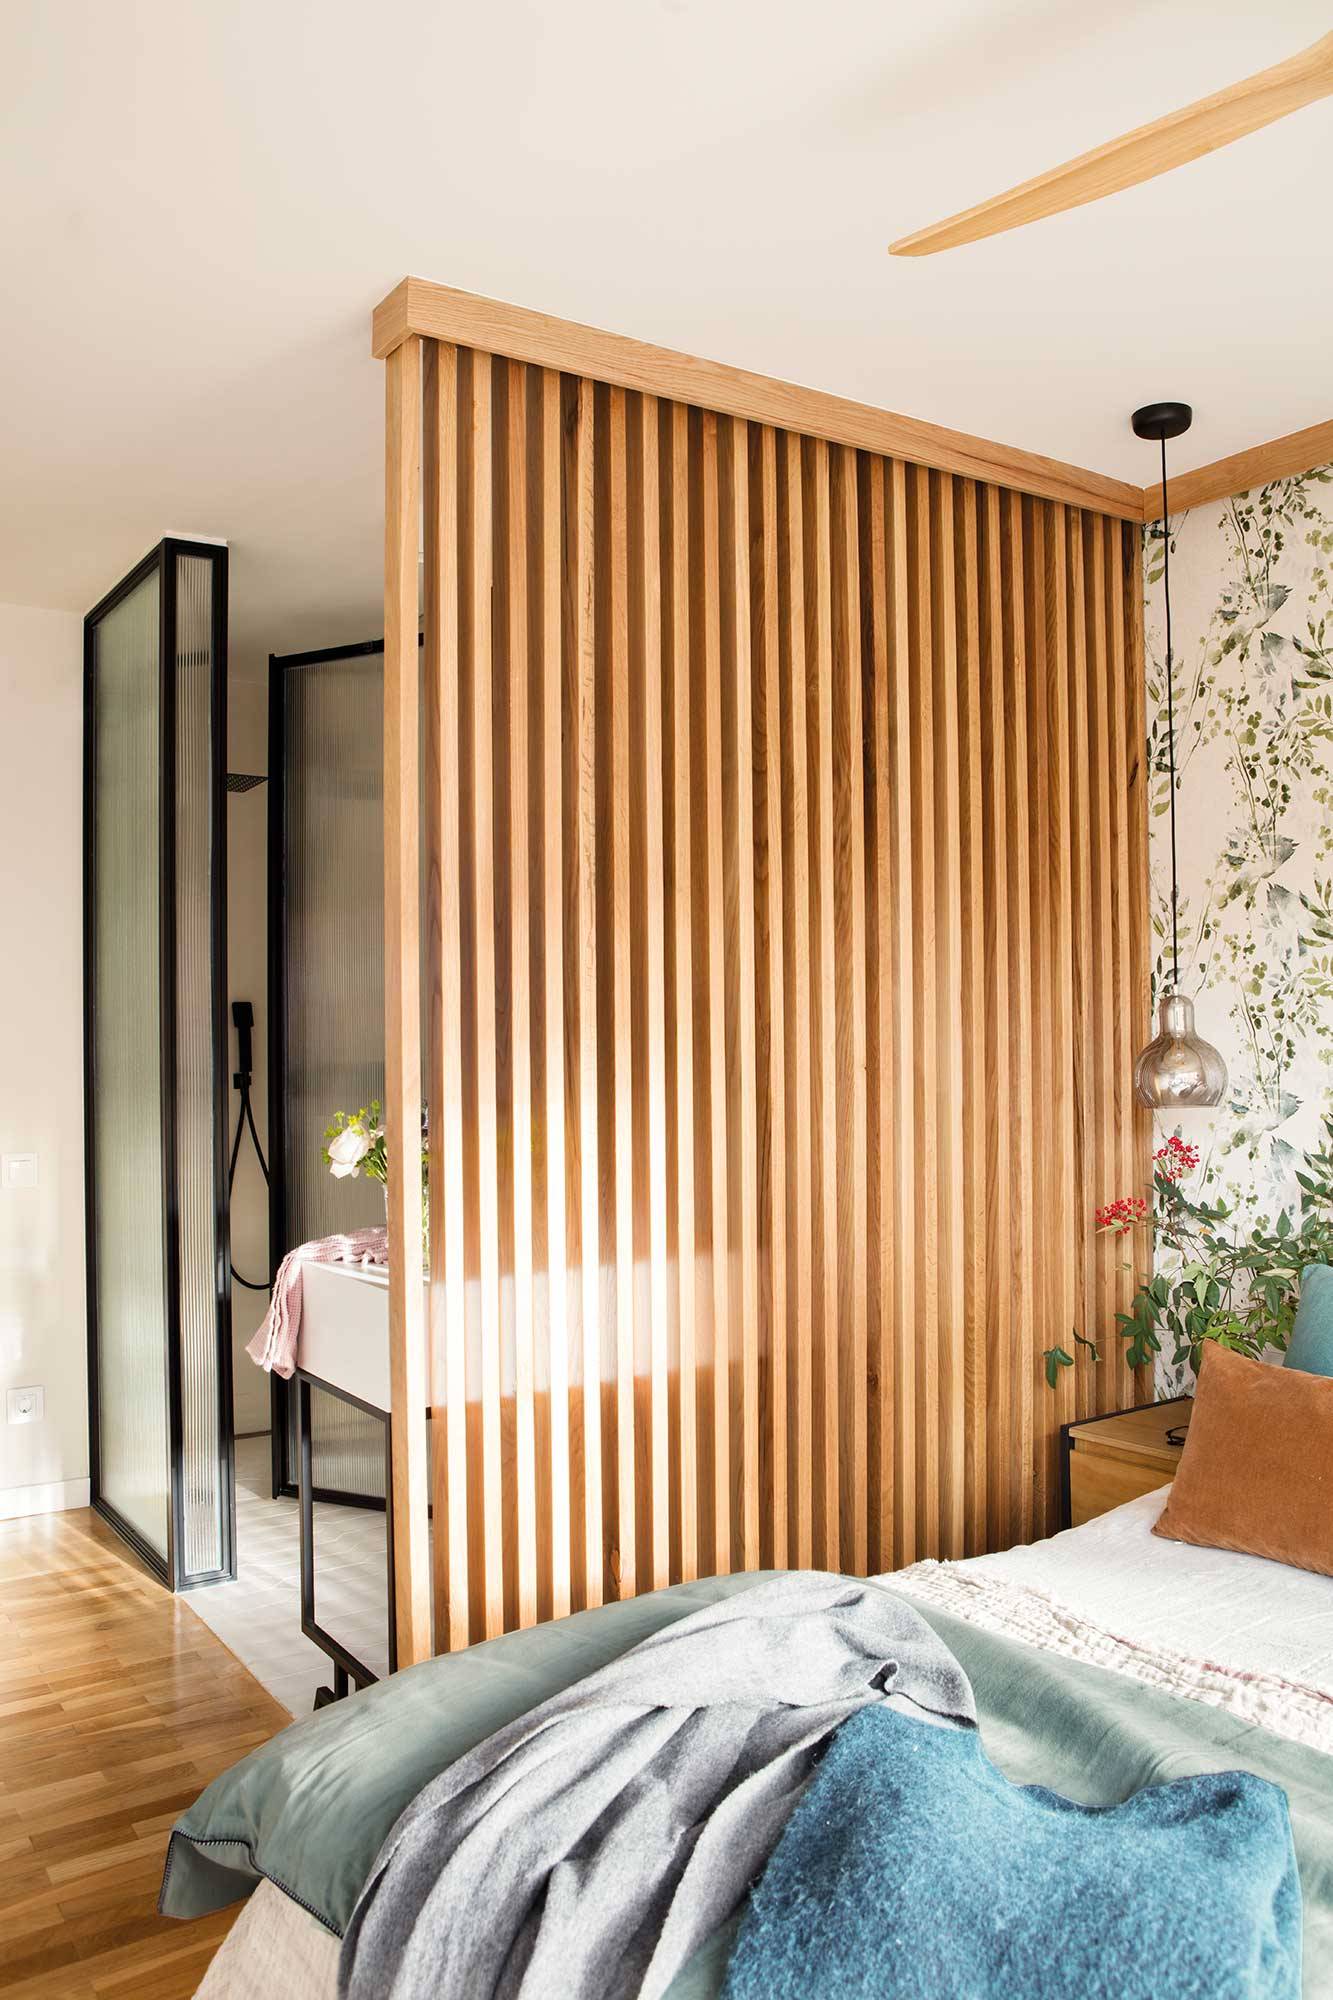 Dormitorio con celosía de madera.